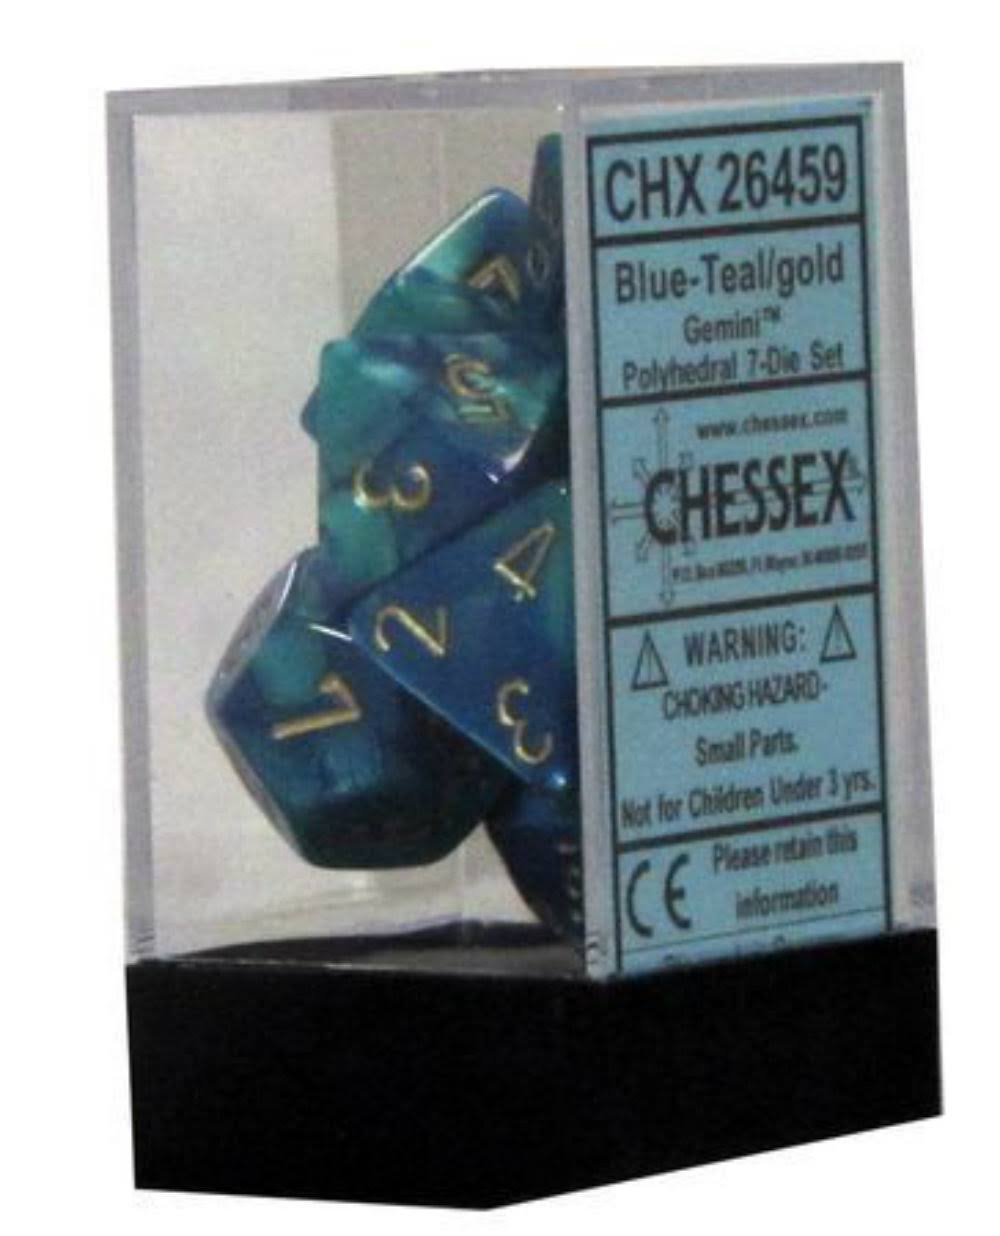 Chessex - 7-Die Set Gemini: Blue-Teal/Gold